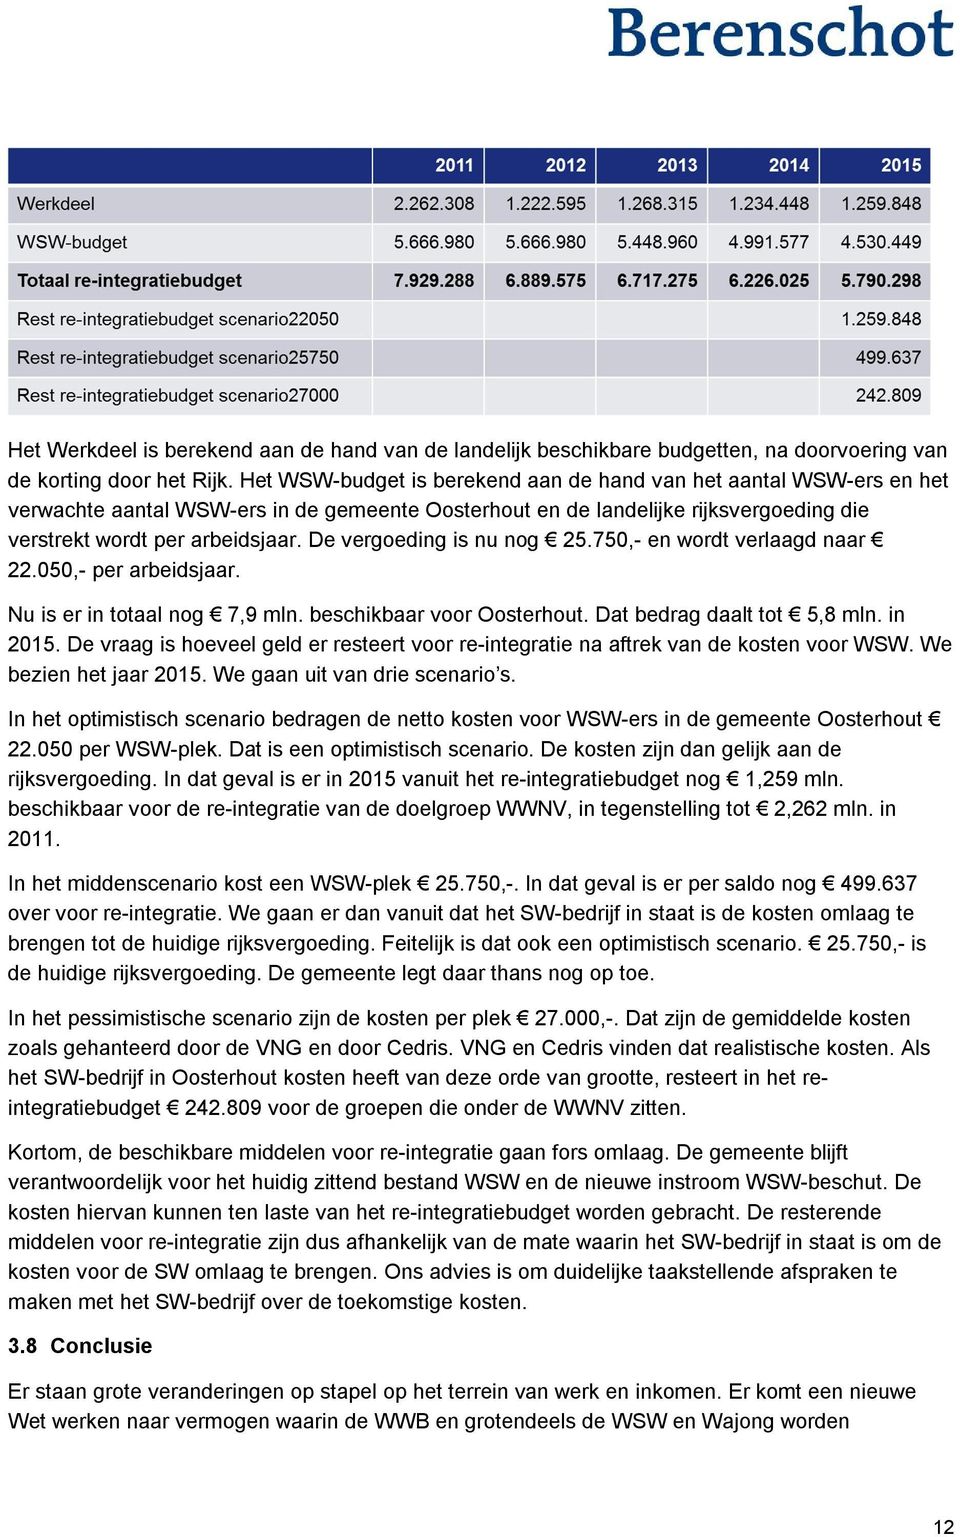 De vergoeding is nu nog 25.750,- en wordt verlaagd naar 22.050,- per arbeidsjaar. Nu is er in totaal nog 7,9 mln. beschikbaar voor Oosterhout. Dat bedrag daalt tot 5,8 mln. in 2015.